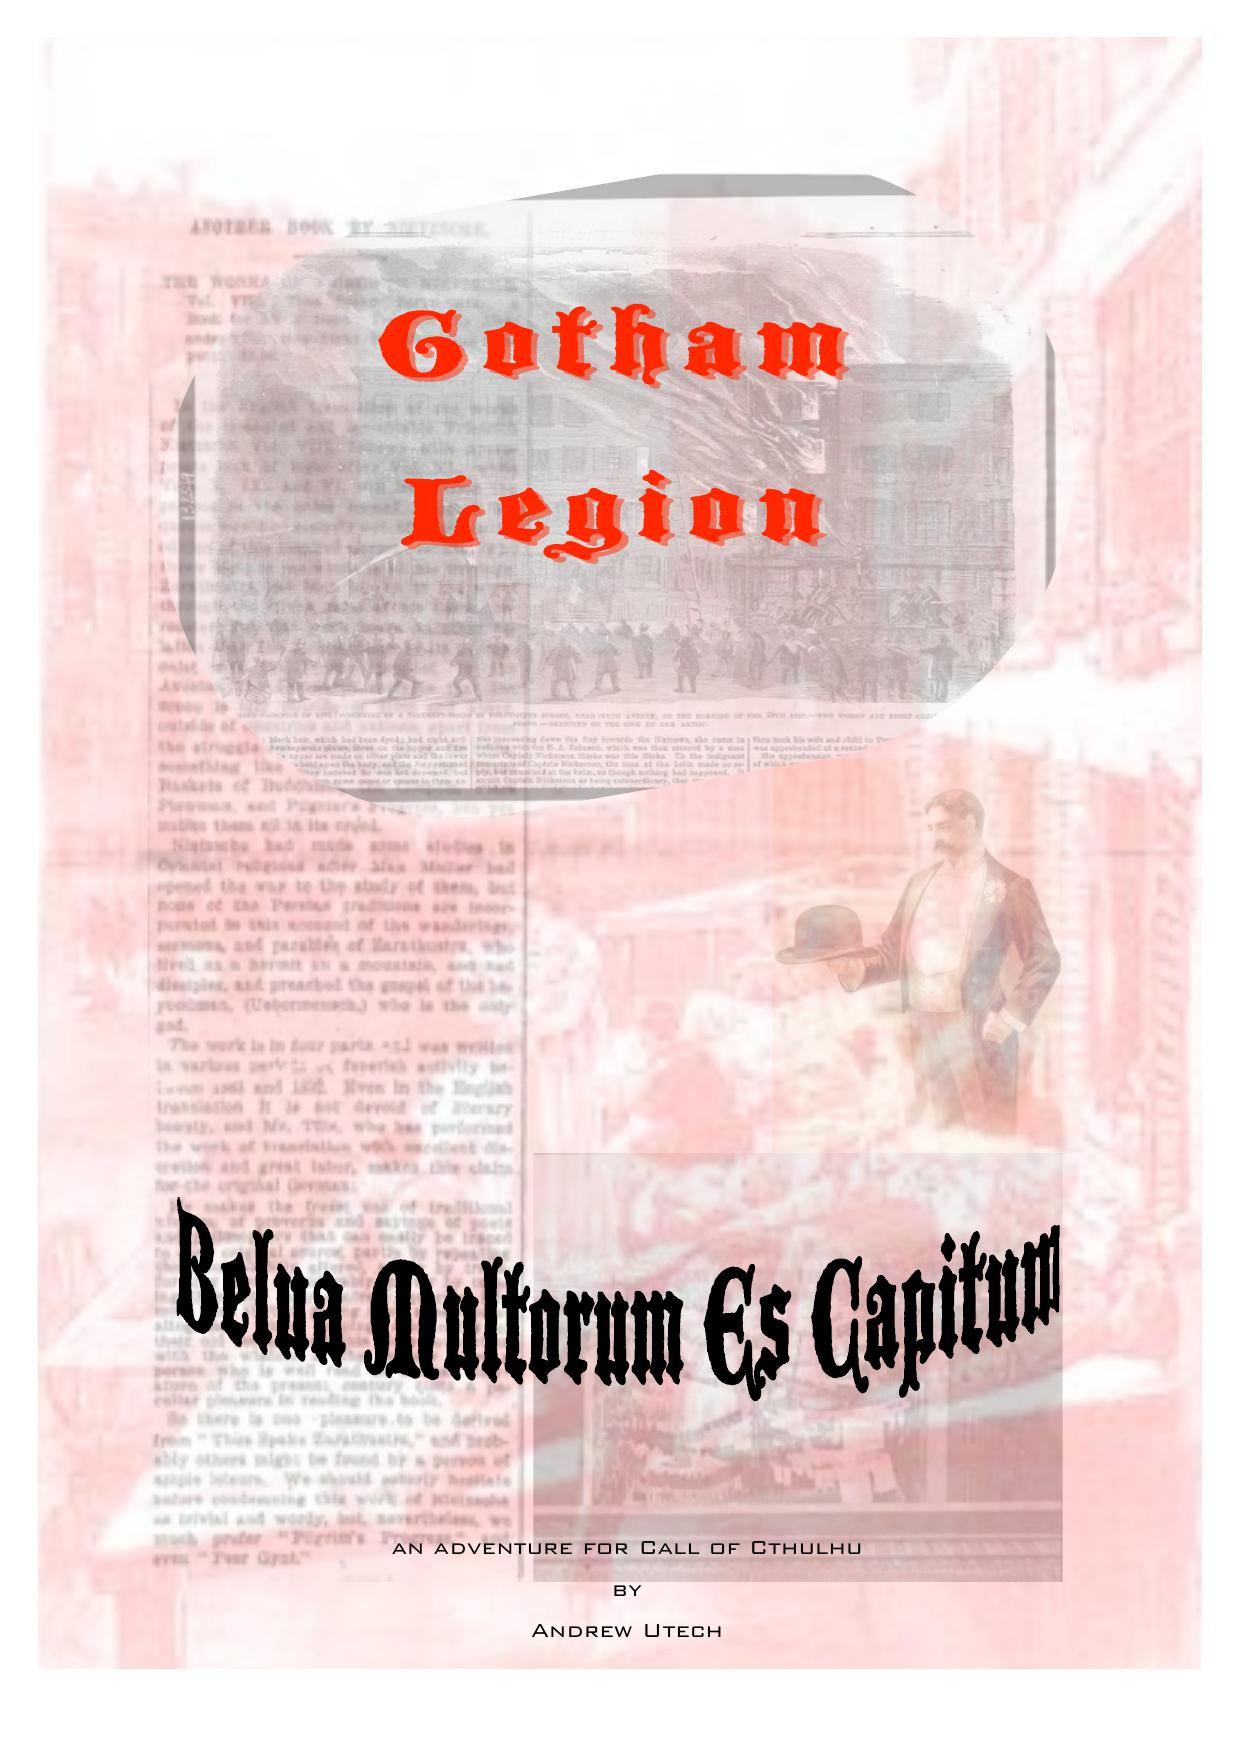 Microsoft Word - Gotham Legion.doc